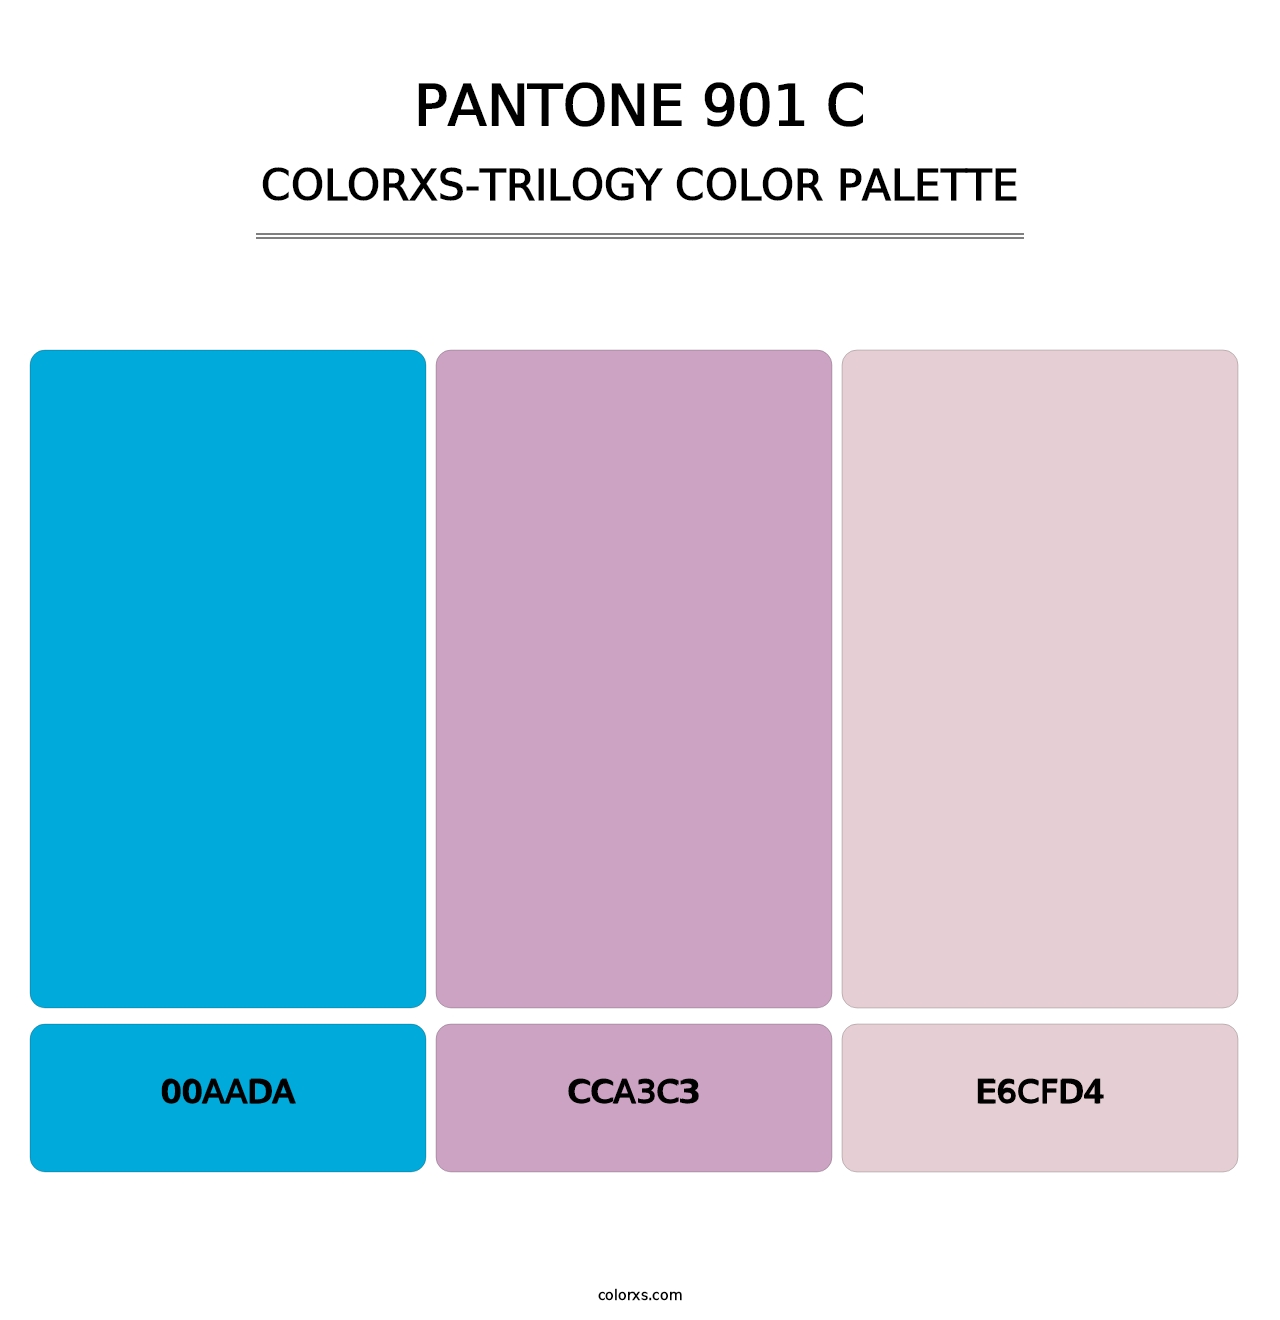 PANTONE 901 C - Colorxs Trilogy Palette